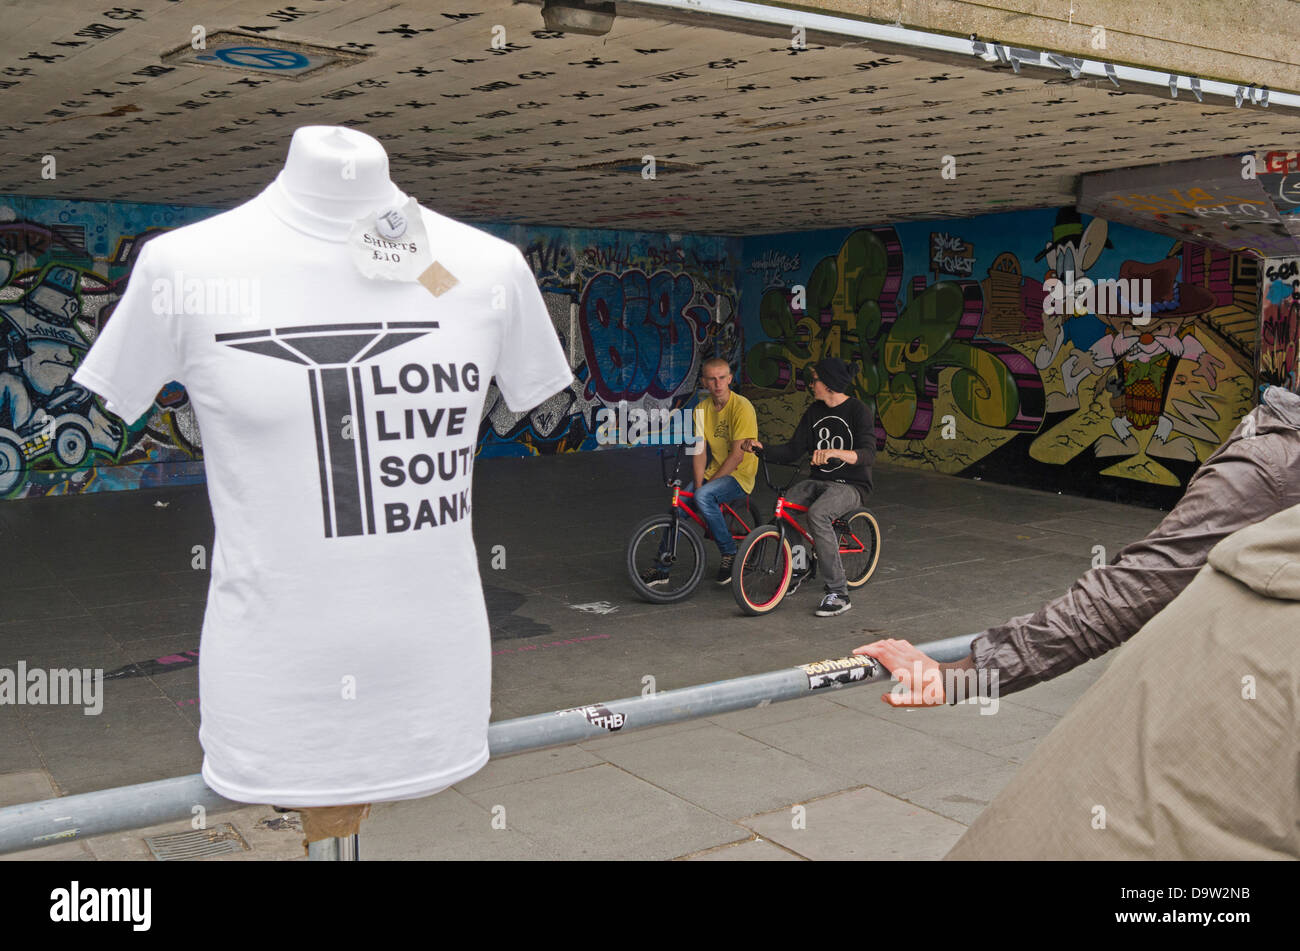 Una lunga vita a South Bank campagna t-shirt a Undercroft. Due piloti di BMX sono in background. Foto Stock